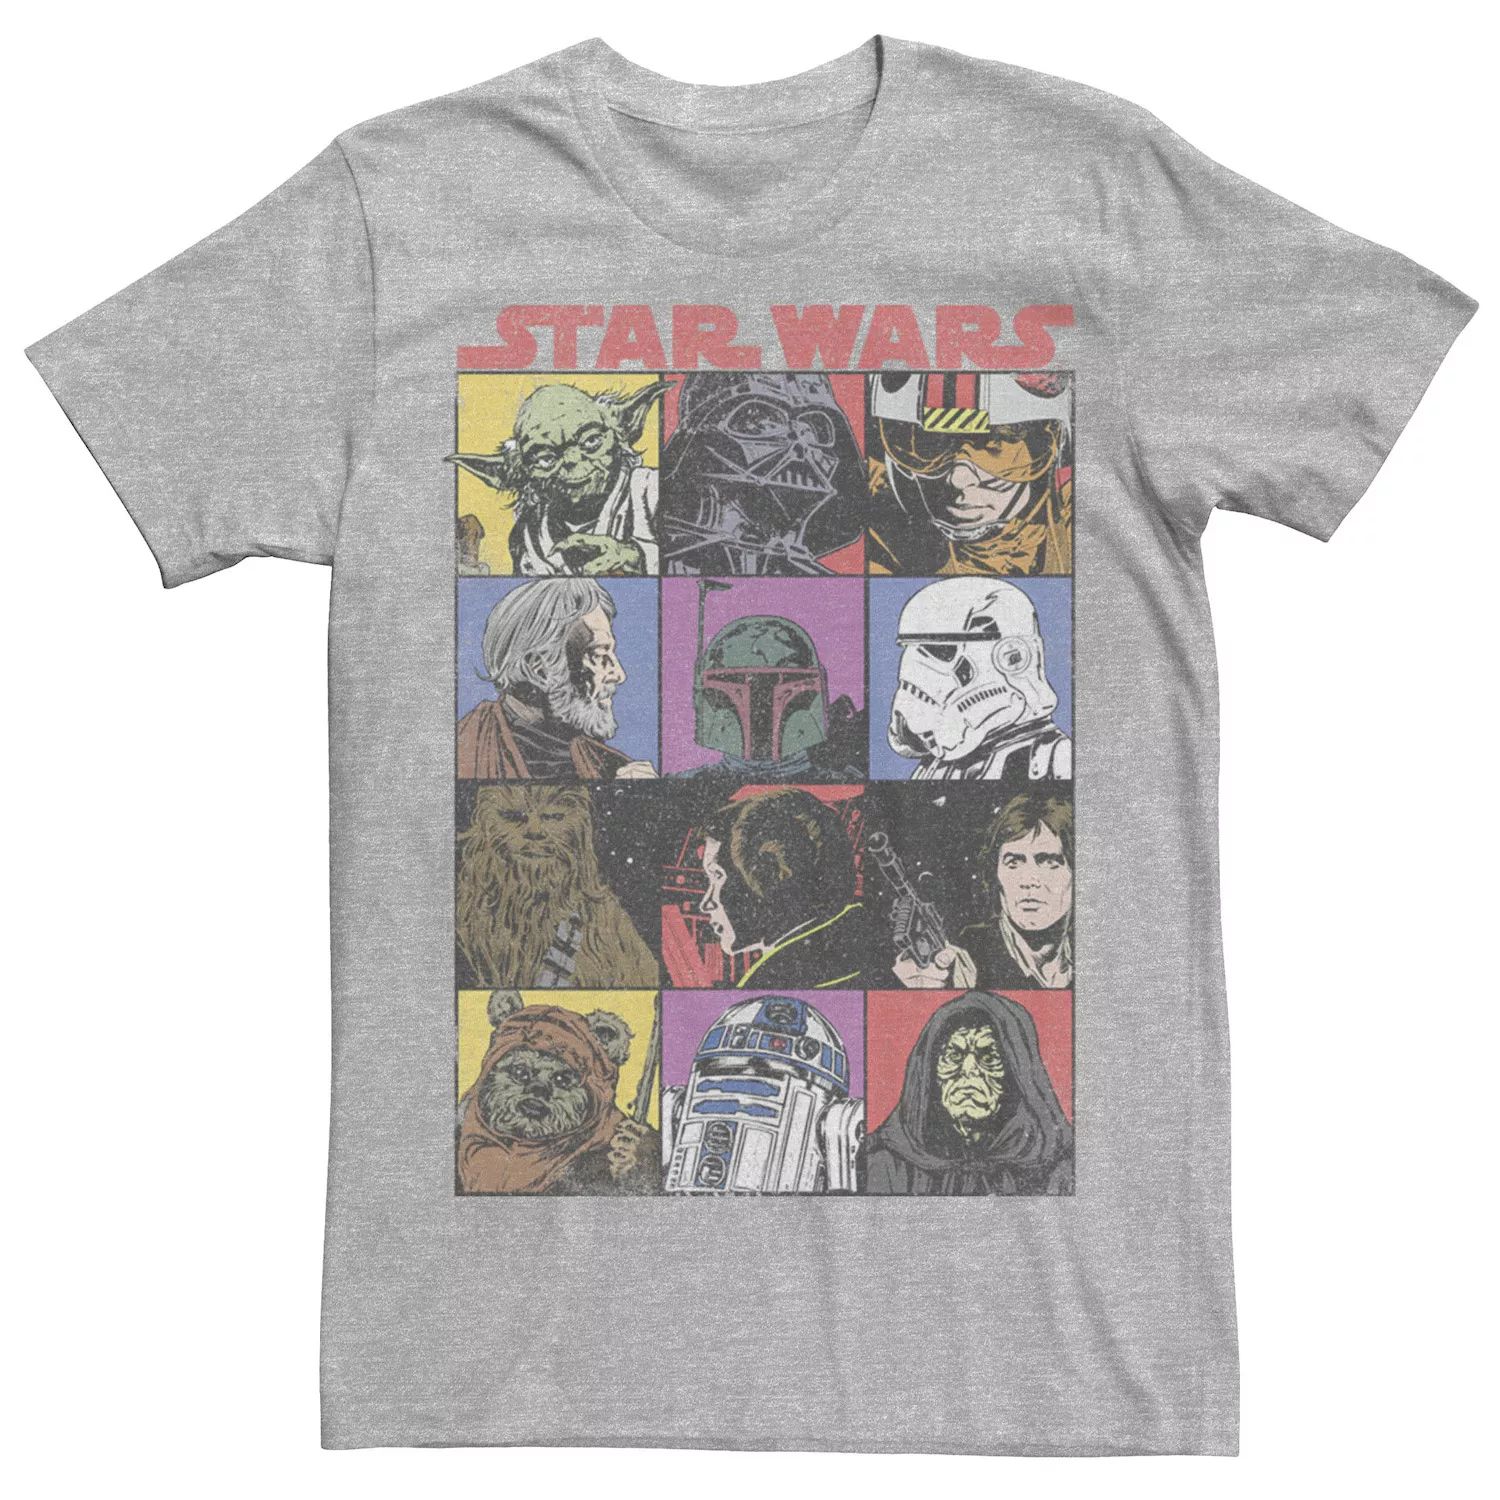 Мужская футболка с героями комиксов и героями мультфильмов Star Wars брелок для телефона с героями мультфильмов человек паук